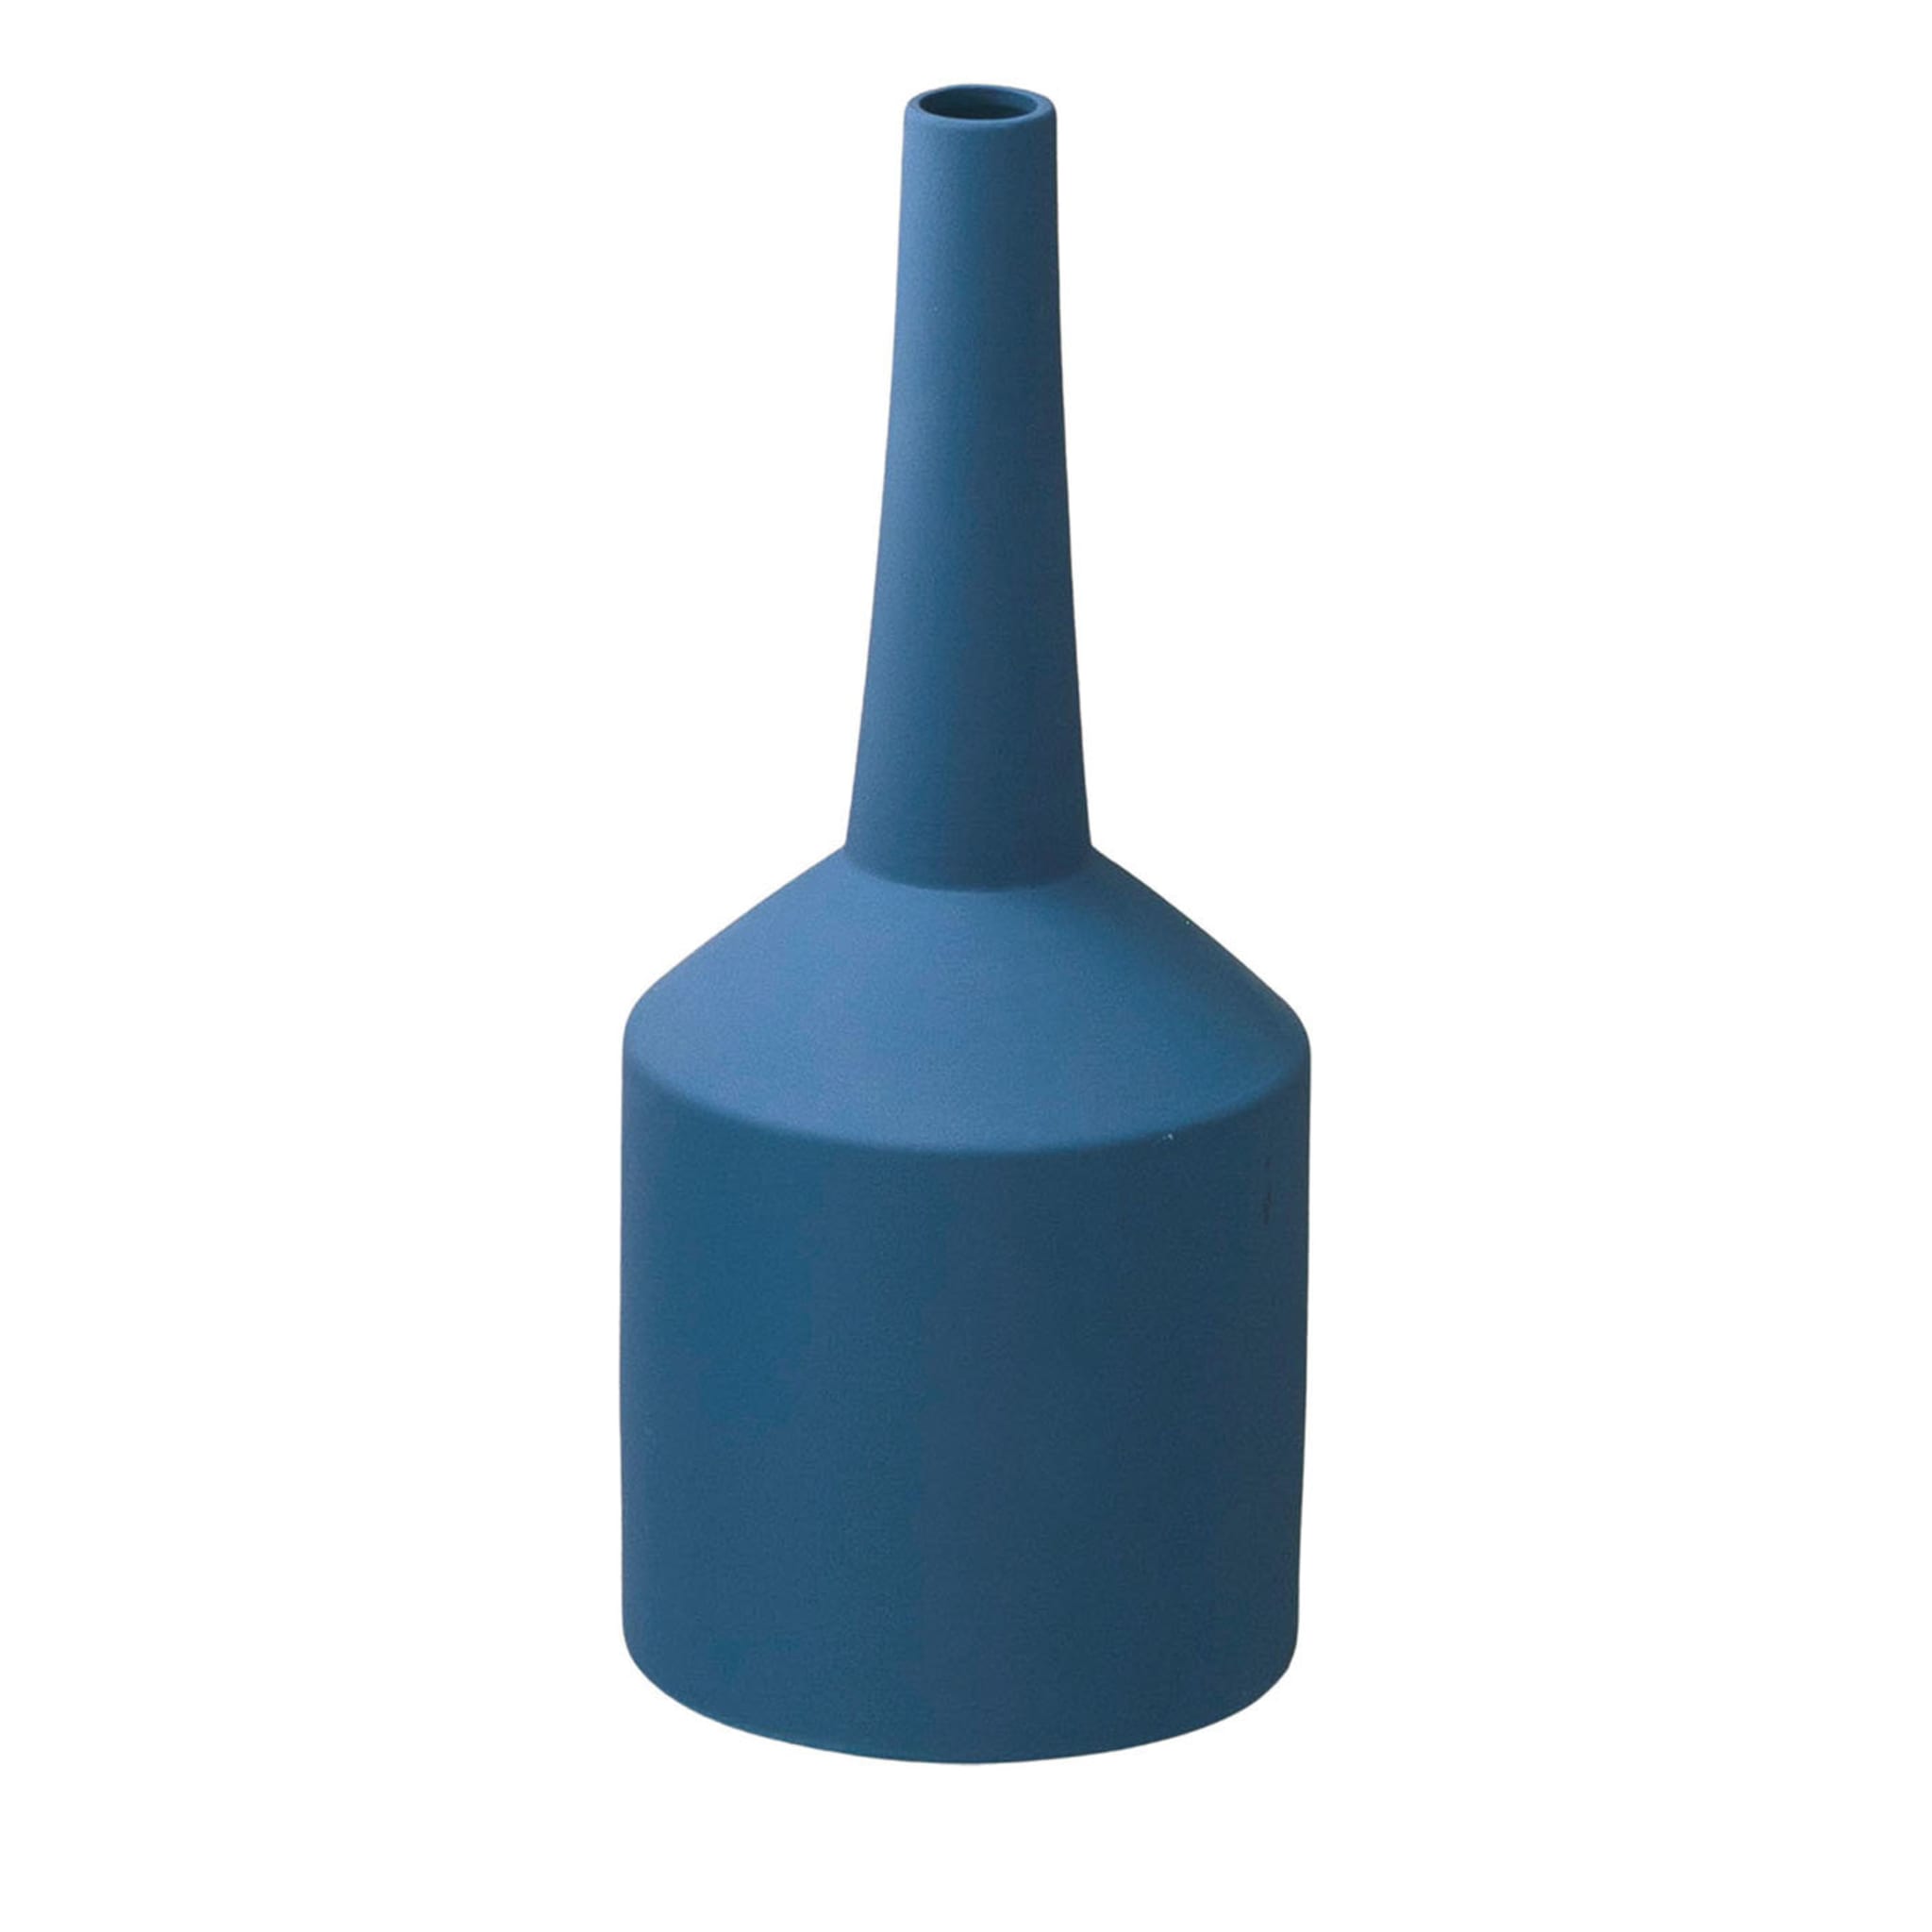 Imbuto Blue Vase by Sonia Pedrazzini - Main view